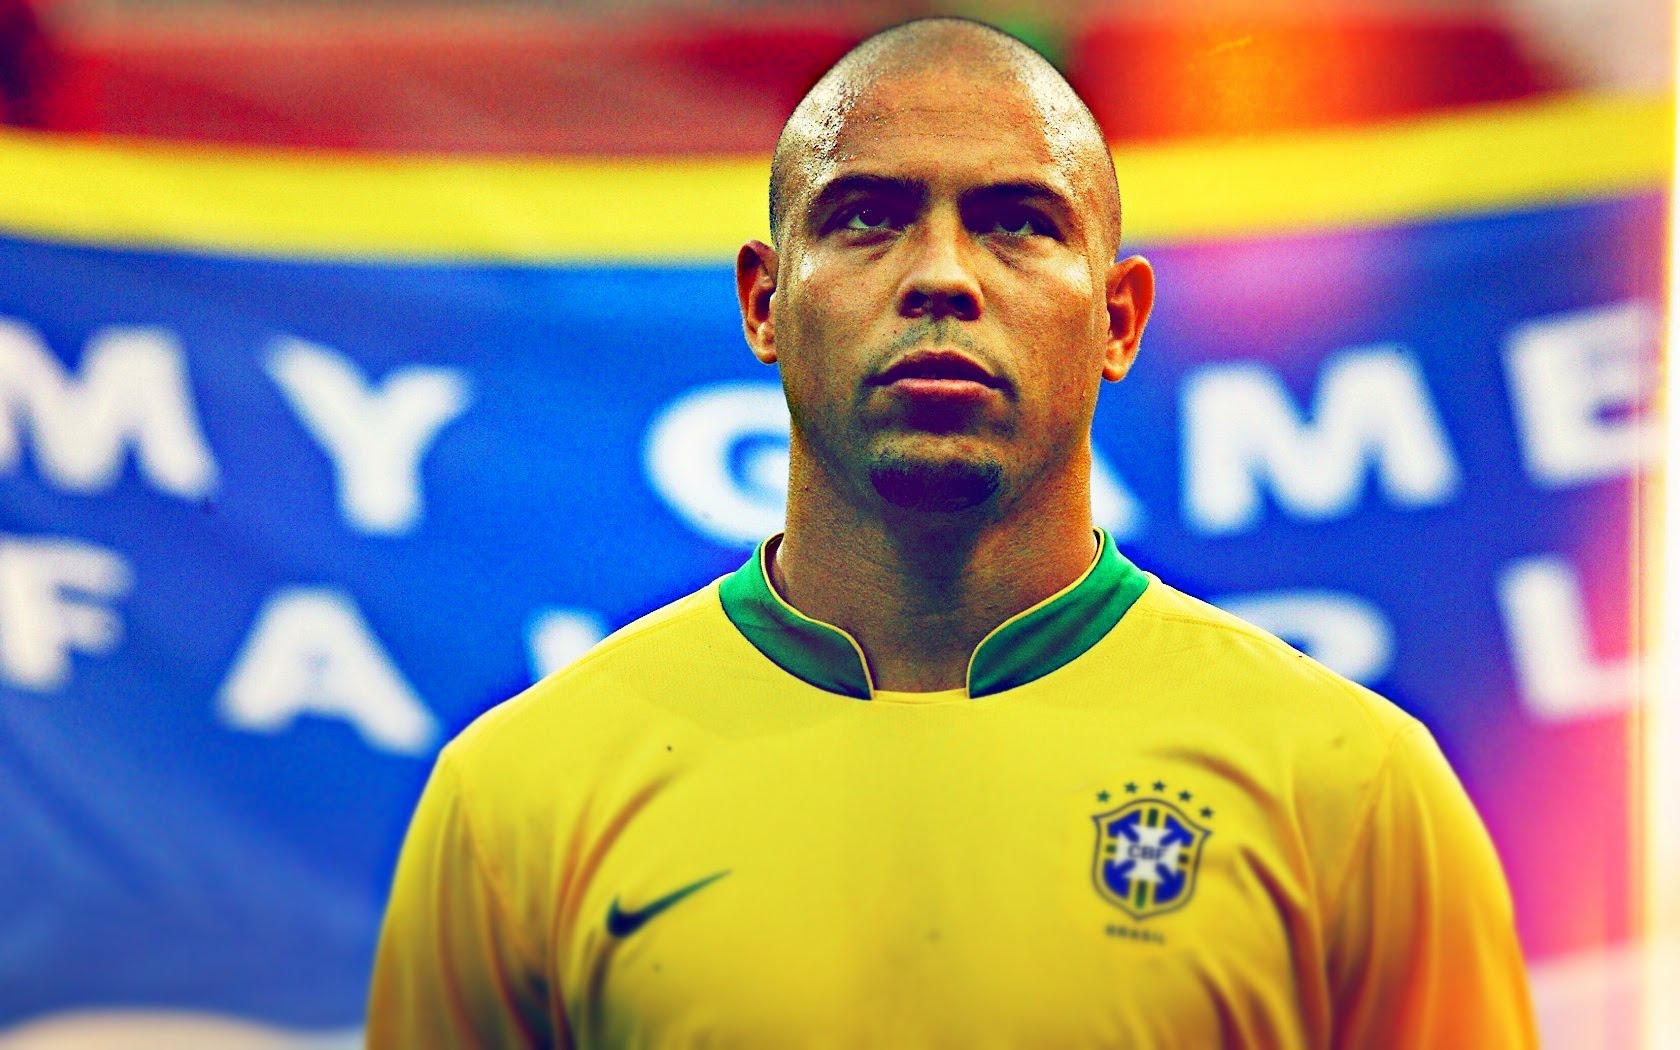 Cựu cầu thủ Ronaldo De Lima được biết đến với tài năng xuất chúng